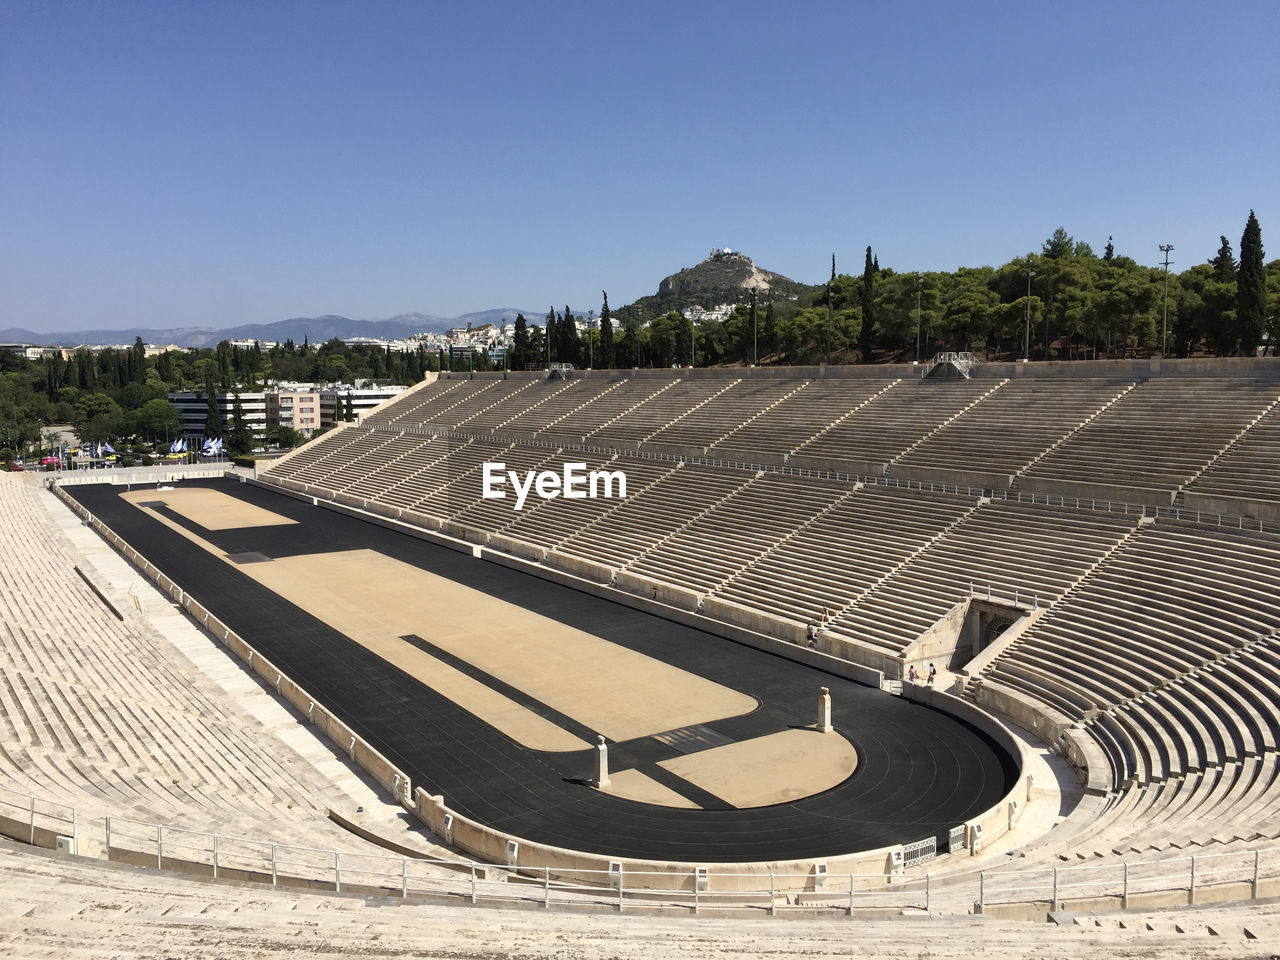 The panathenaic stadium or kallimarmaro is a multi-purpose stadium in athens, greece. 